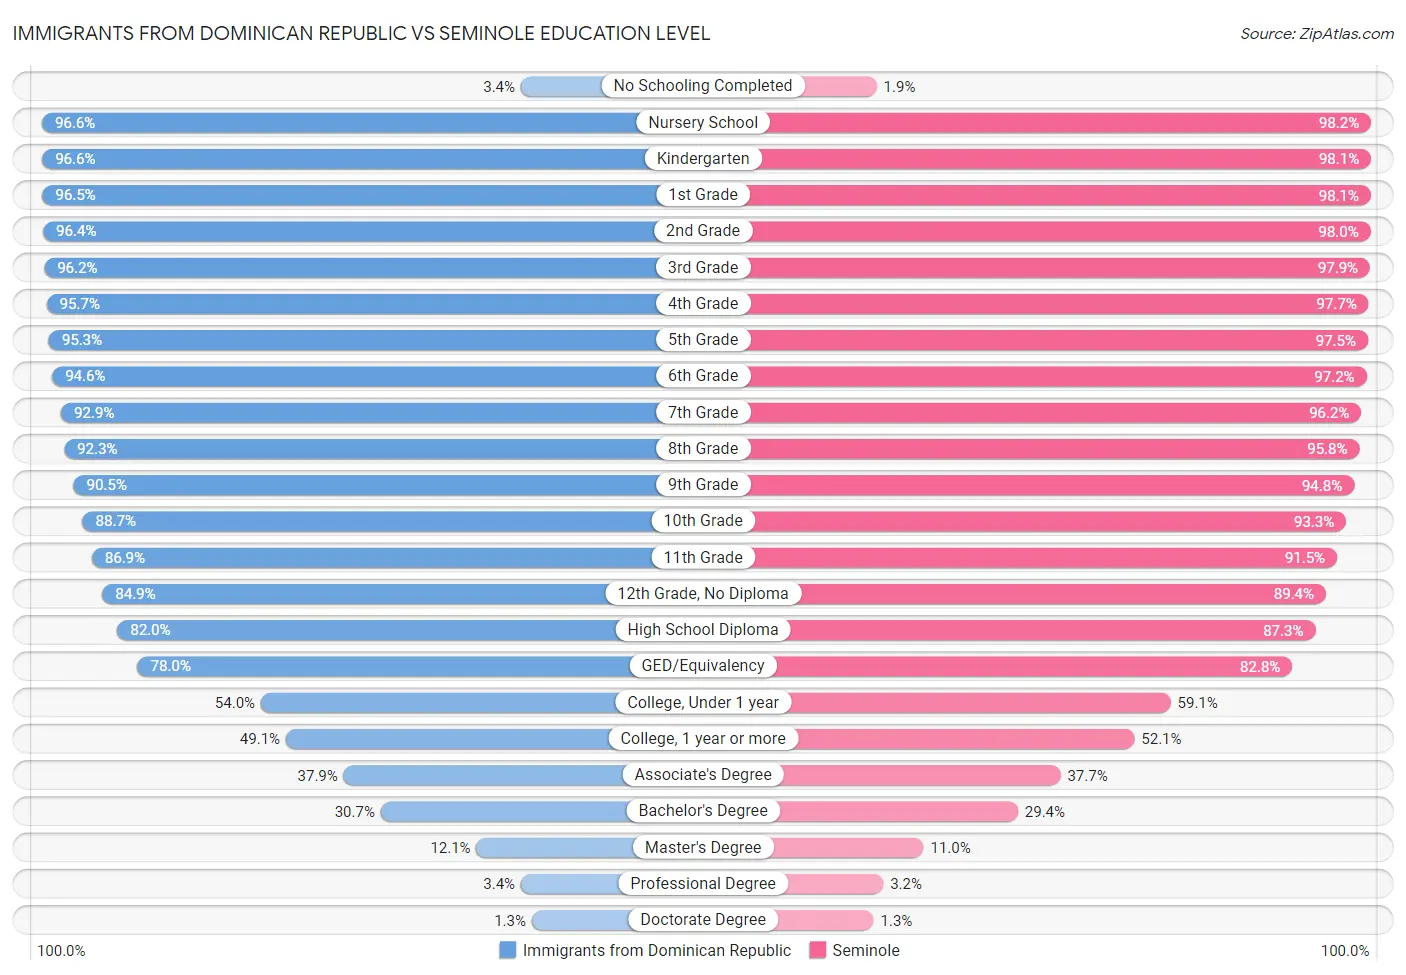 Immigrants from Dominican Republic vs Seminole Education Level